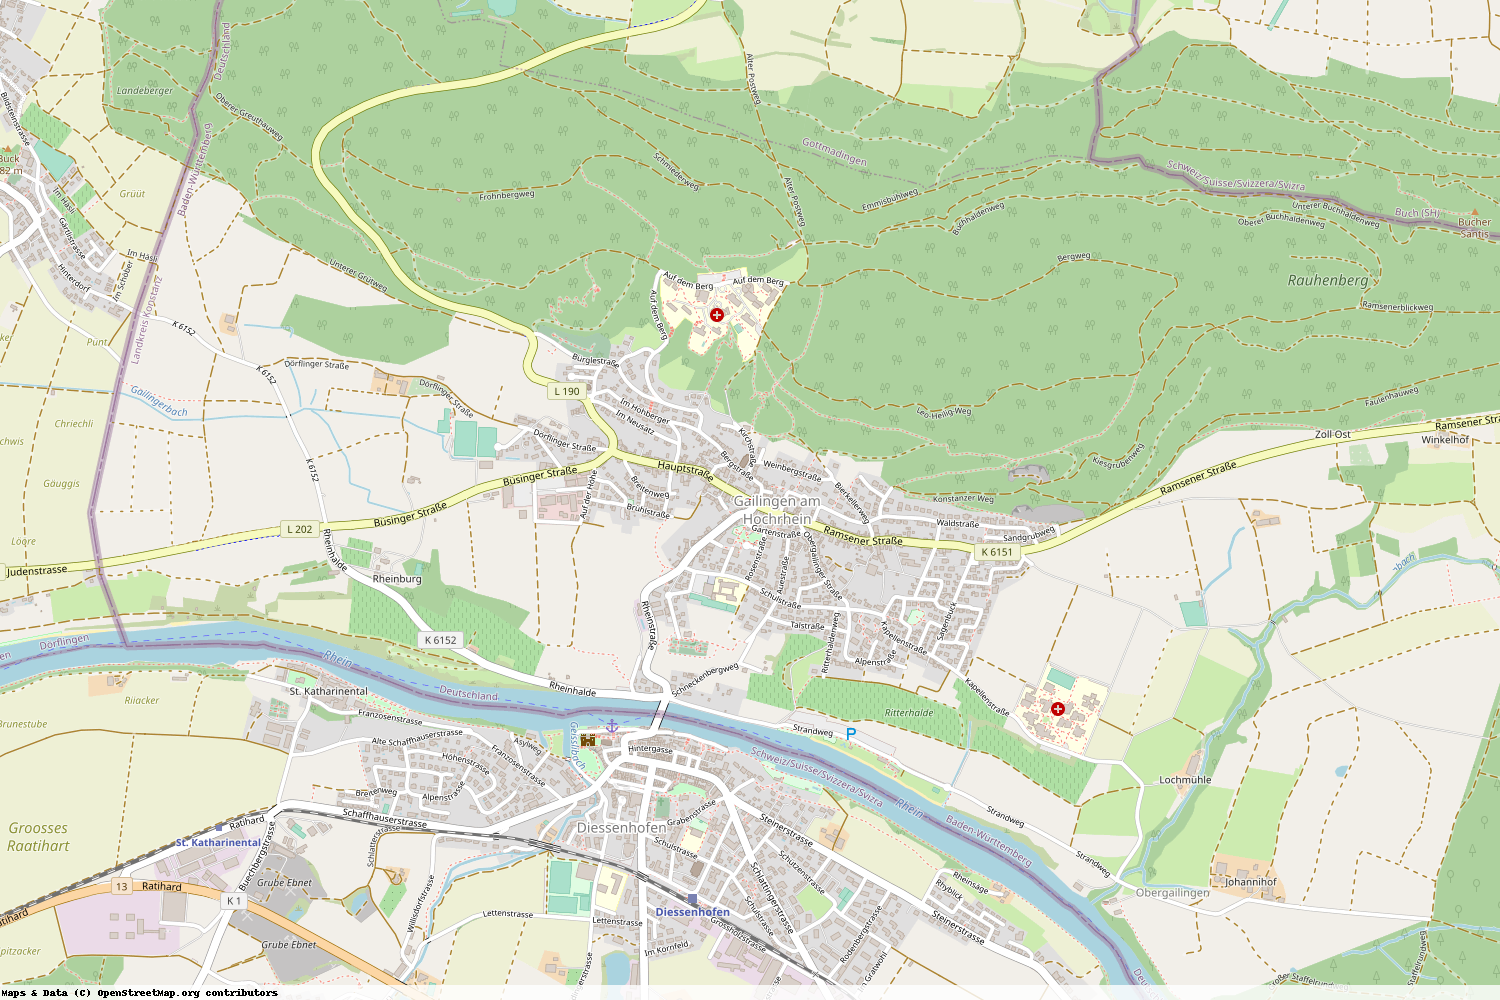 Ist gerade Stromausfall in Baden-Württemberg - Konstanz - Gailingen am Hochrhein?